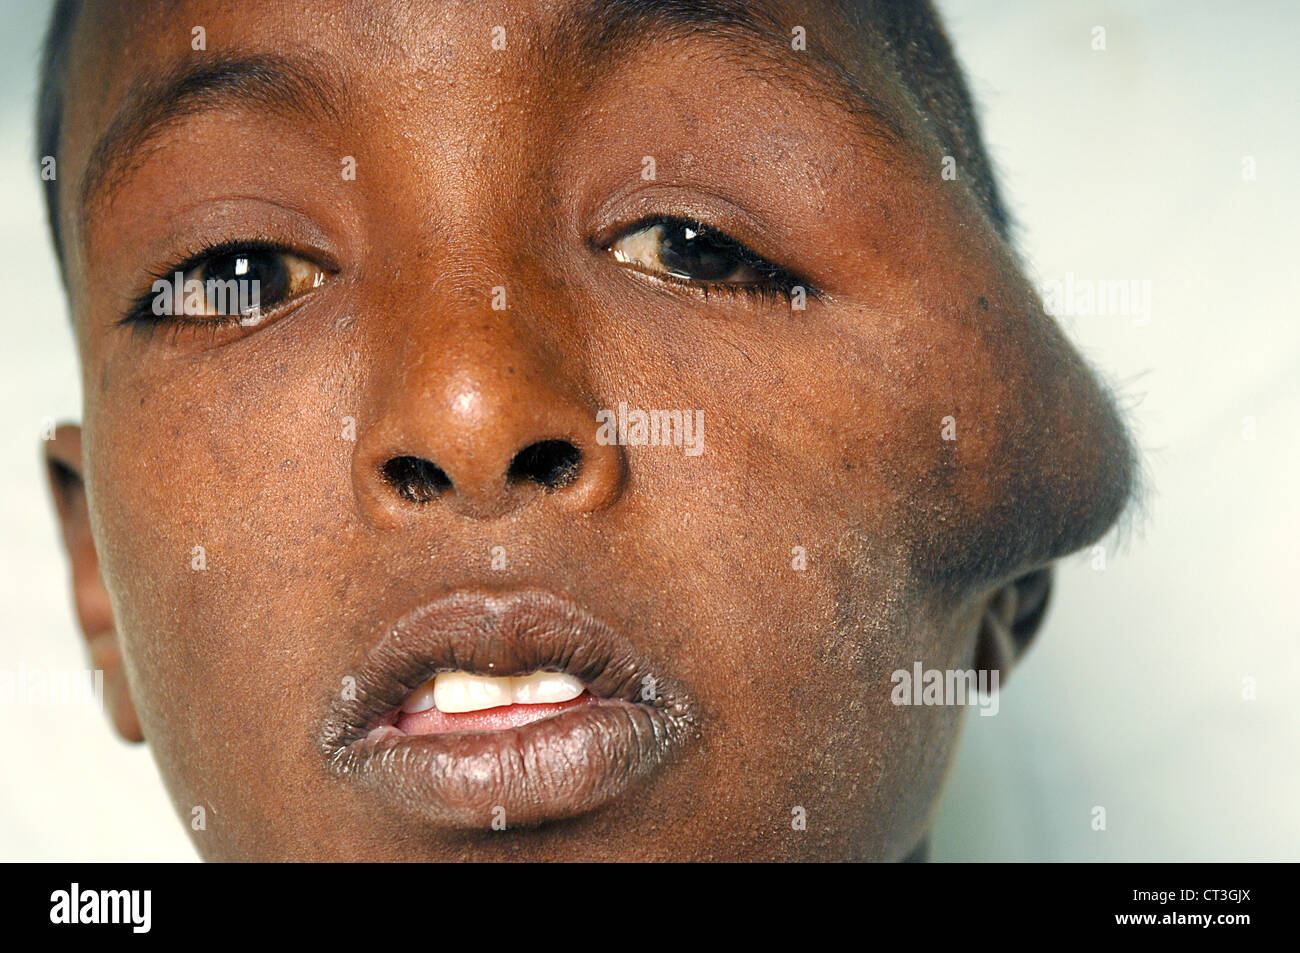 13 Jahre alte männliche Neuro Hämangiom und Tinea Capitis - Soba, Sudan leiden. Tinea Capitis ist besser bekannt als Scherpilzflechte in der Kopfhaut. Stockfoto